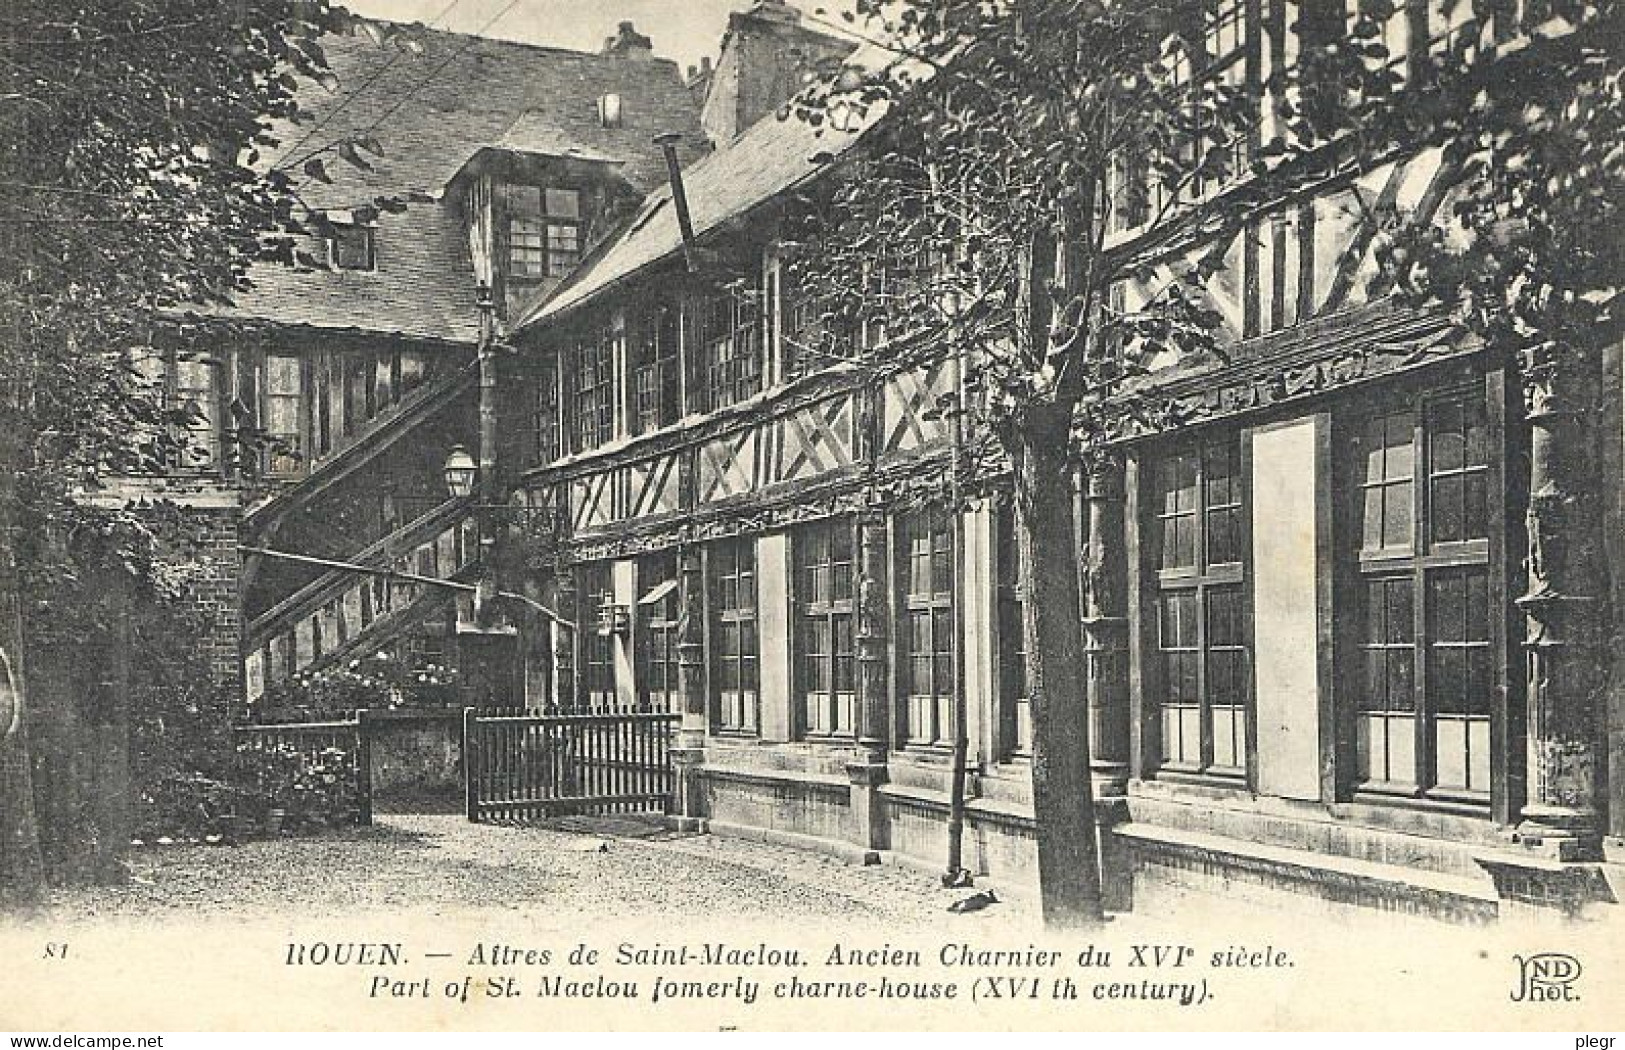 76540 01 50#0 - ROUEN - AITRES DE SAINT MACLOU - ANCIEN CHARNIER - Rouen